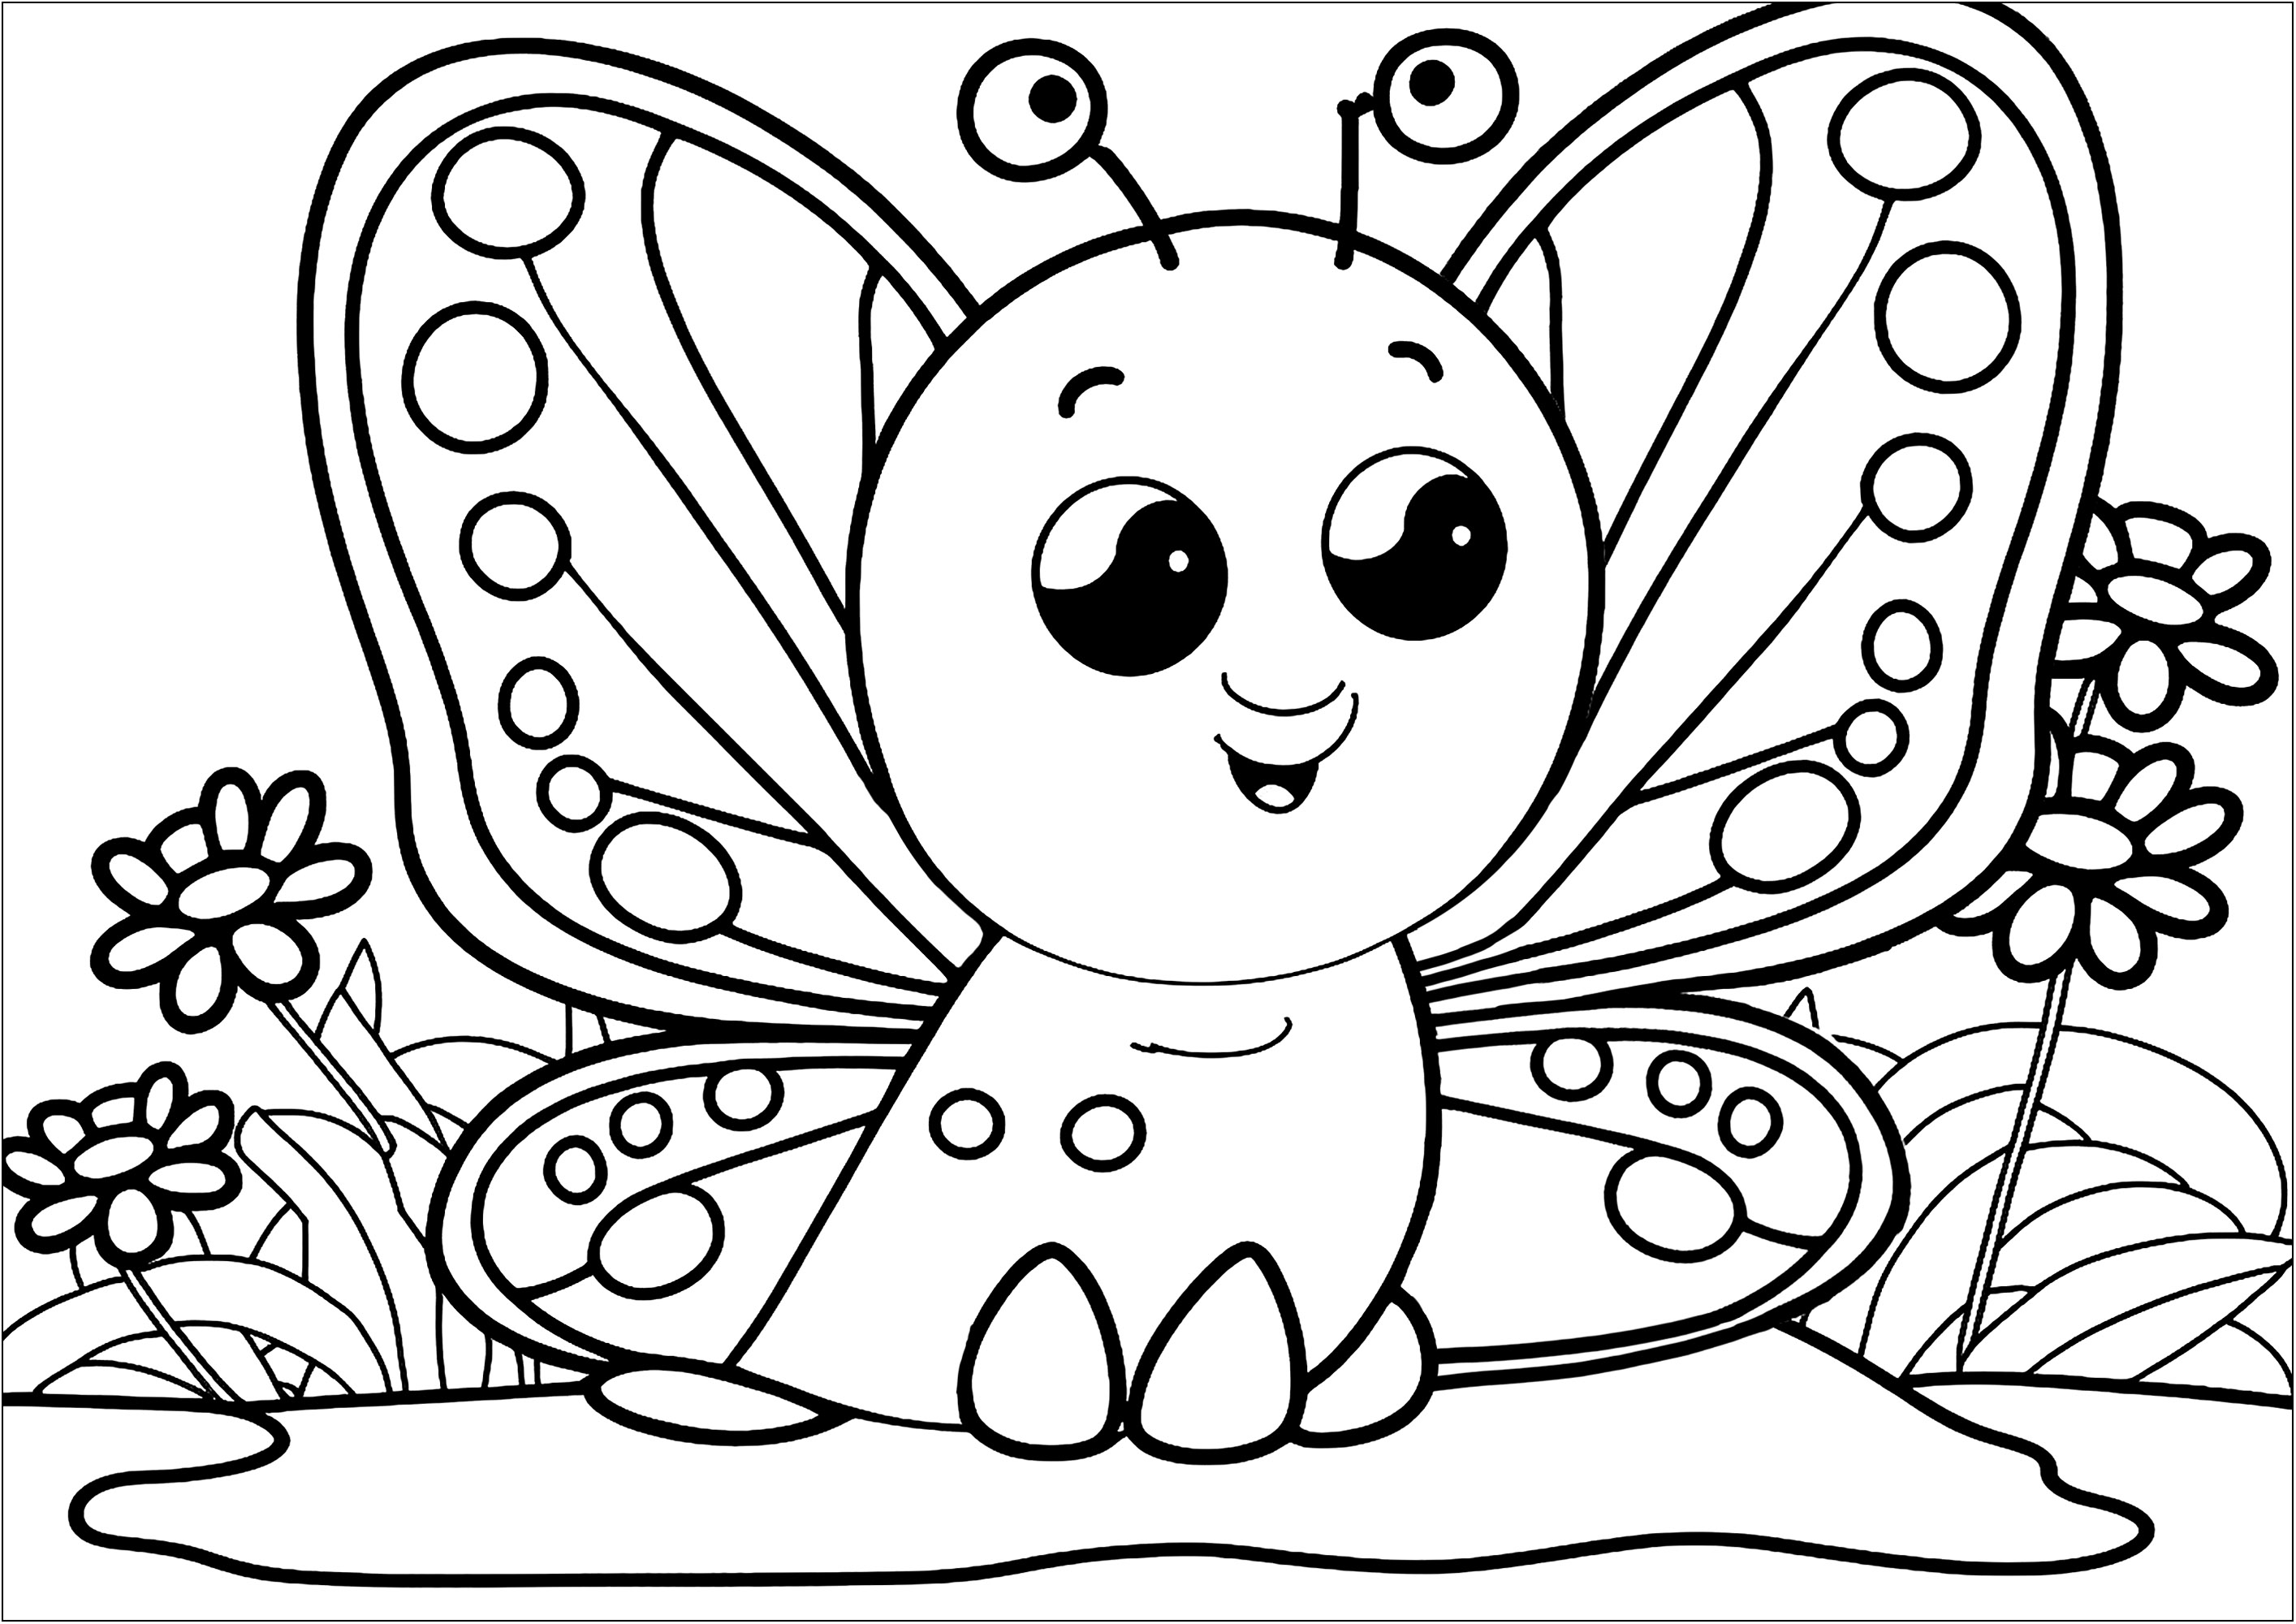 Una bonita mariposa de ojos grandes, muy fácil de colorear. Esta página para colorear tiene pocos detalles y grandes áreas, por lo que es perfecta para los más pequeños.Con colores vivos, esta pequeña mariposa parecerá aún más encantadora. ¡Los niños estarán encantados de ver el resultado de su trabajo una vez terminado el coloreado!